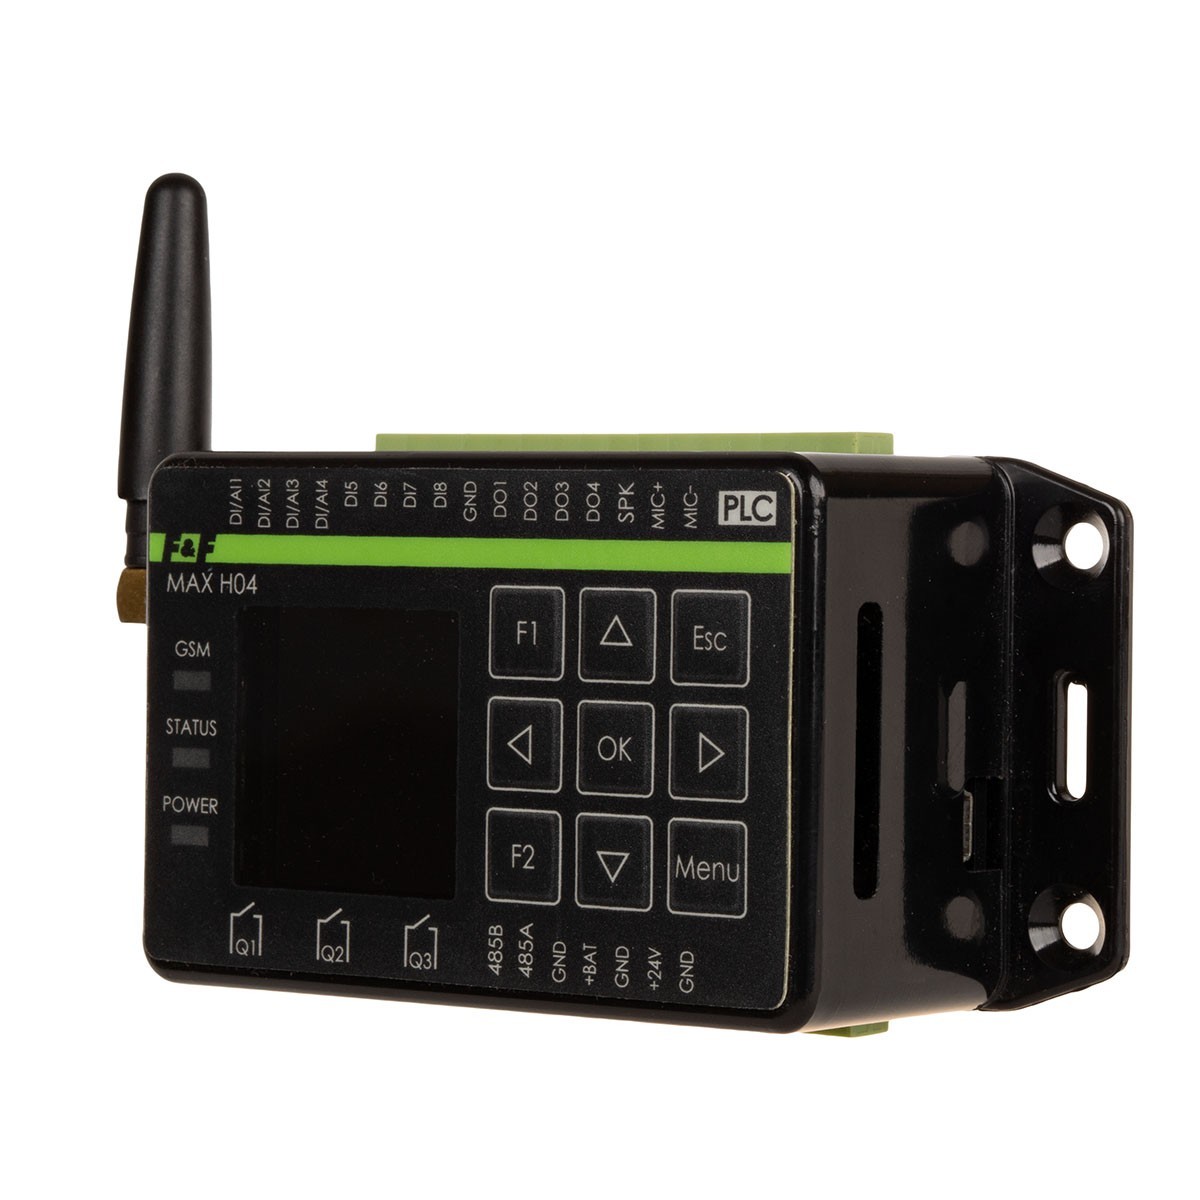 MAX-H04PAK sterownik programowalny z panelem czołowym z komunikatorem GSM, klawiatura + lcd, antena zewnętrzna 2,5m w komplecie + zestaw inżynierski [zas.12V+płytka testowa MAXTest + kabel USB + kartaSD 2GB] F&F